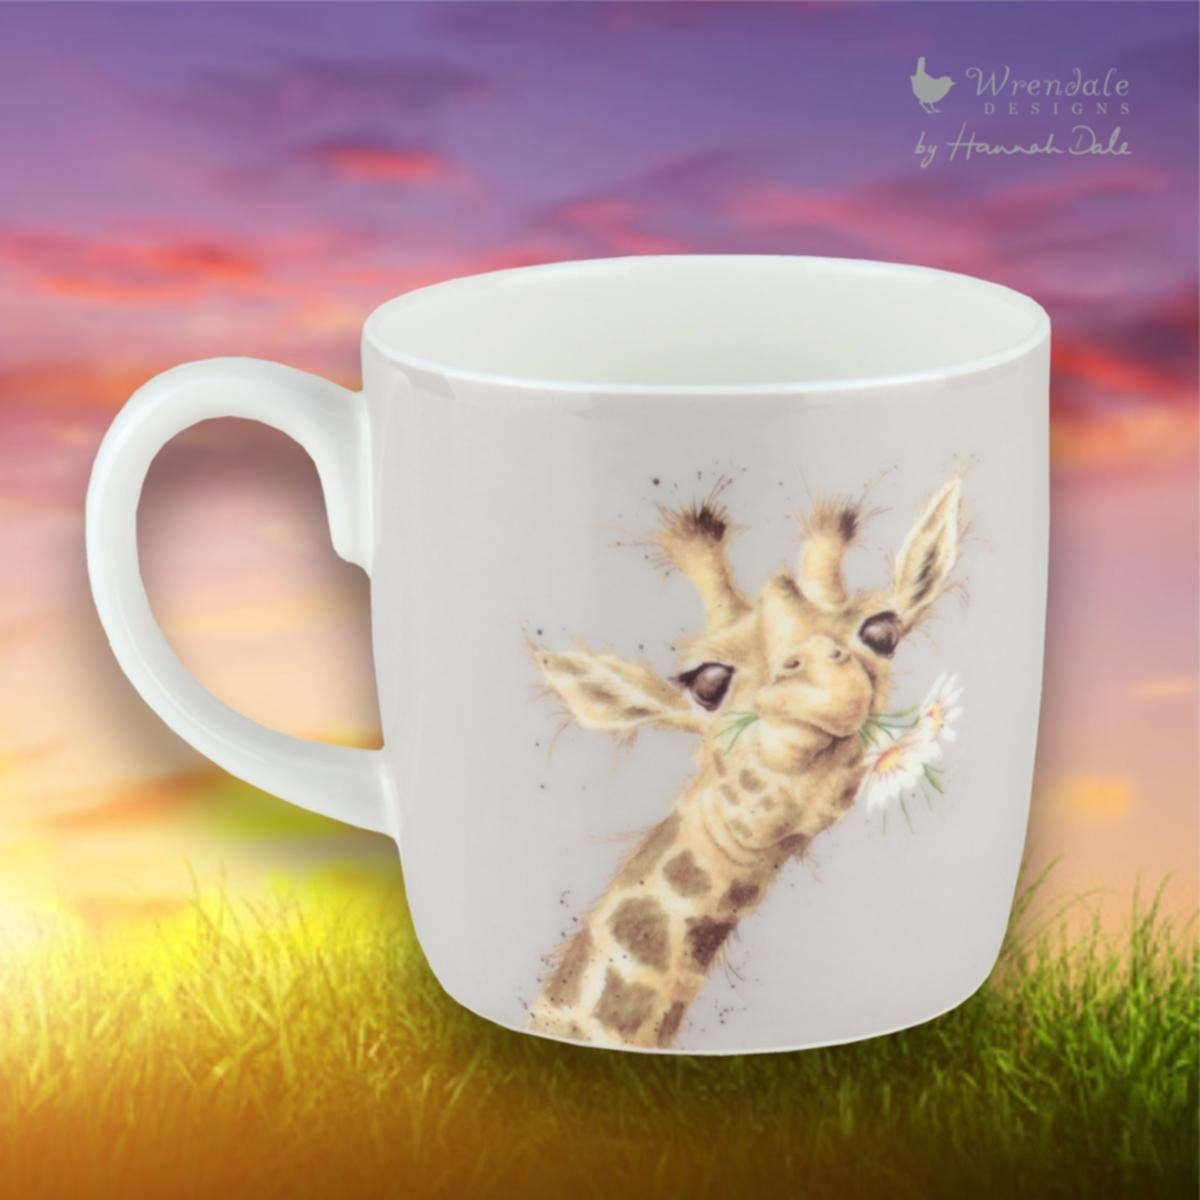 Designs Porzellan Giraffe Porzellan-Becher Wrendale Becher Wrendale Daisy,